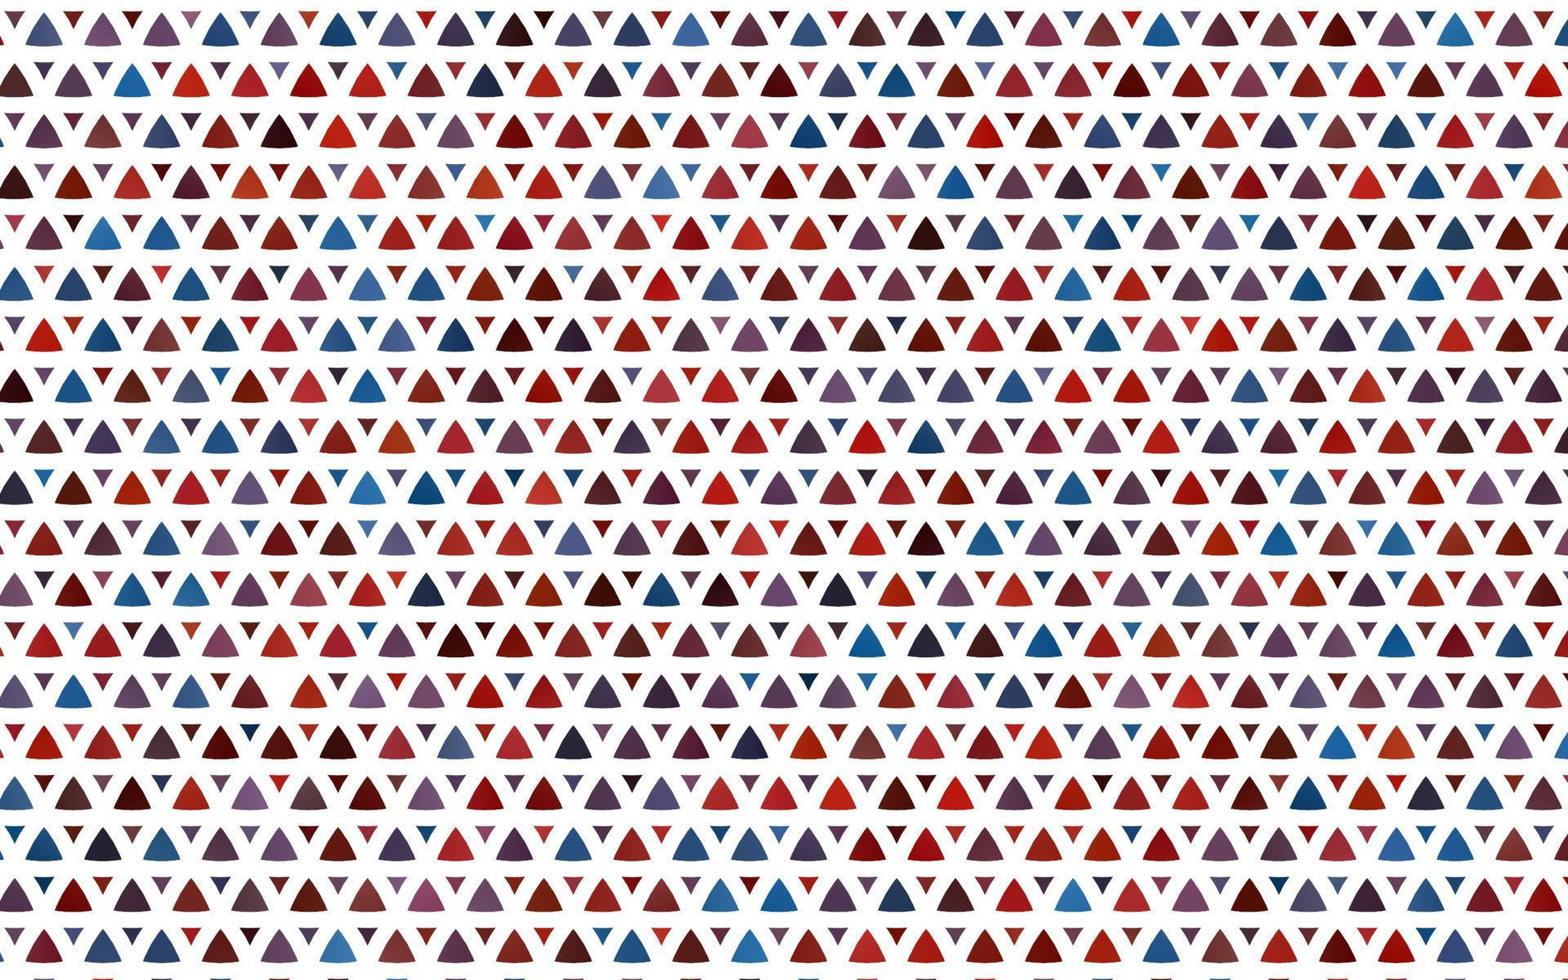 couverture transparente de vecteur bleu clair, rouge dans un style polygonal.